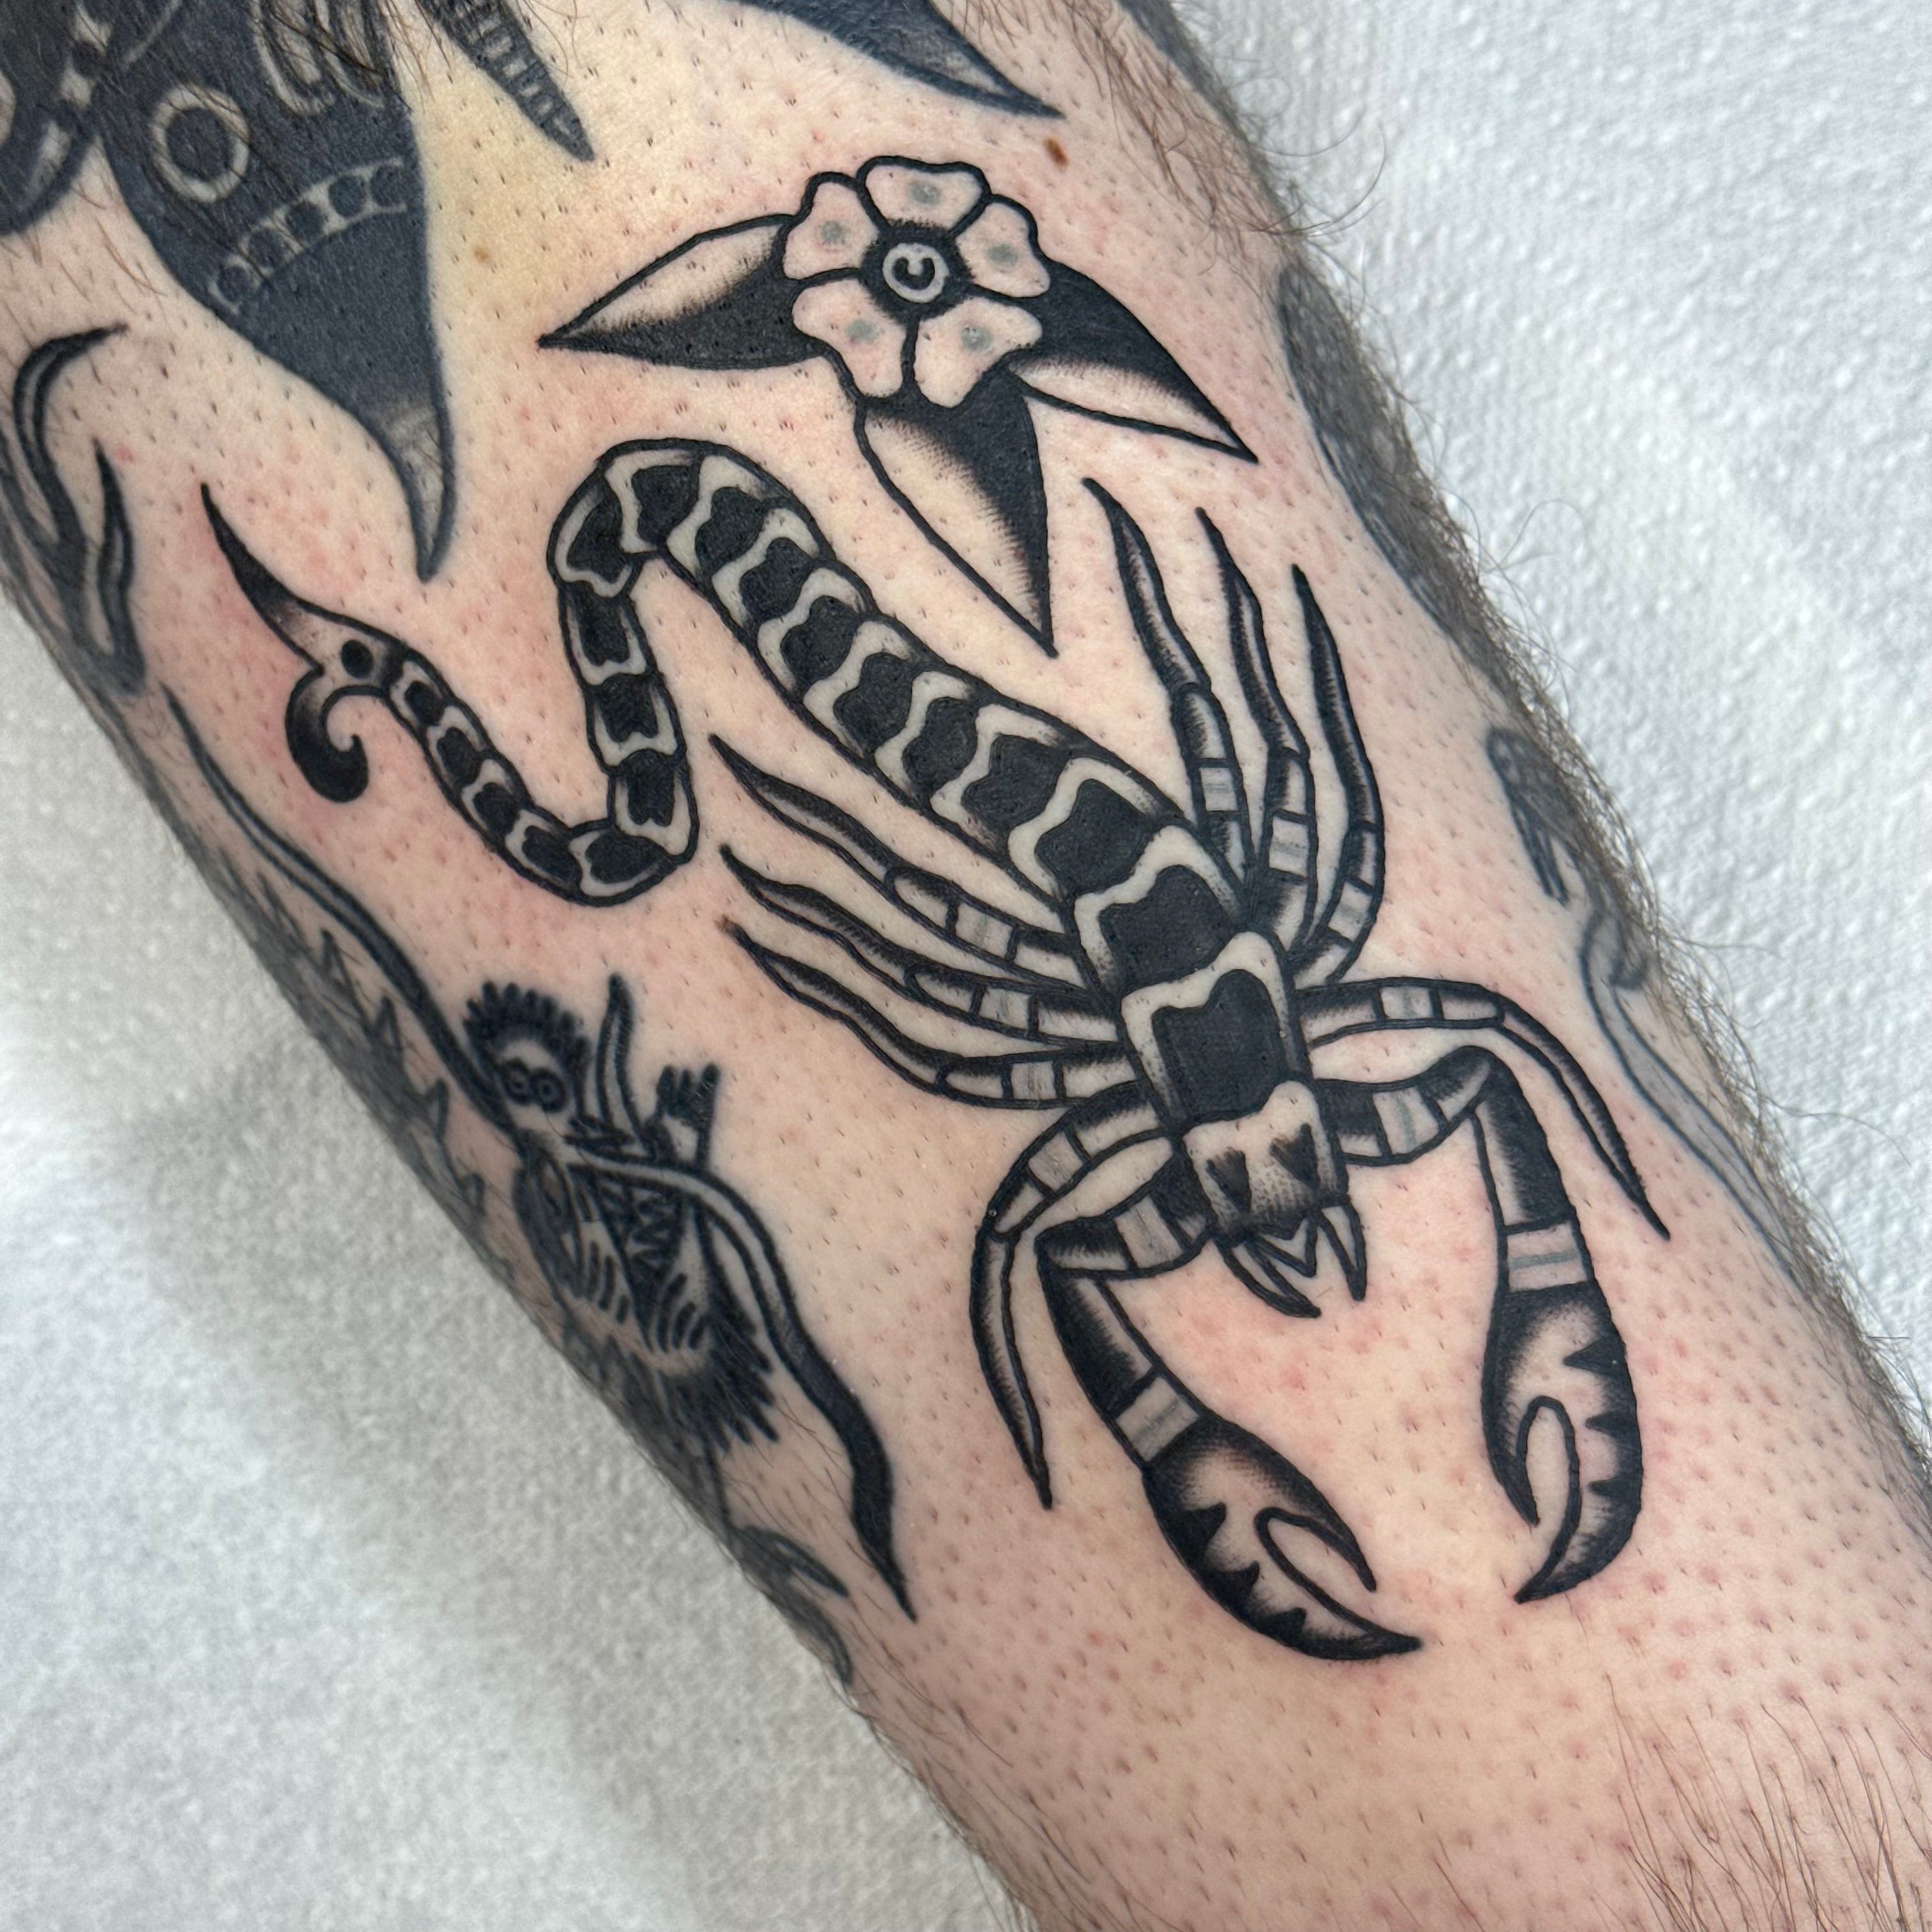 50+ scorpio tattoo Ideas [Best Designs] • Canadian Tattoos